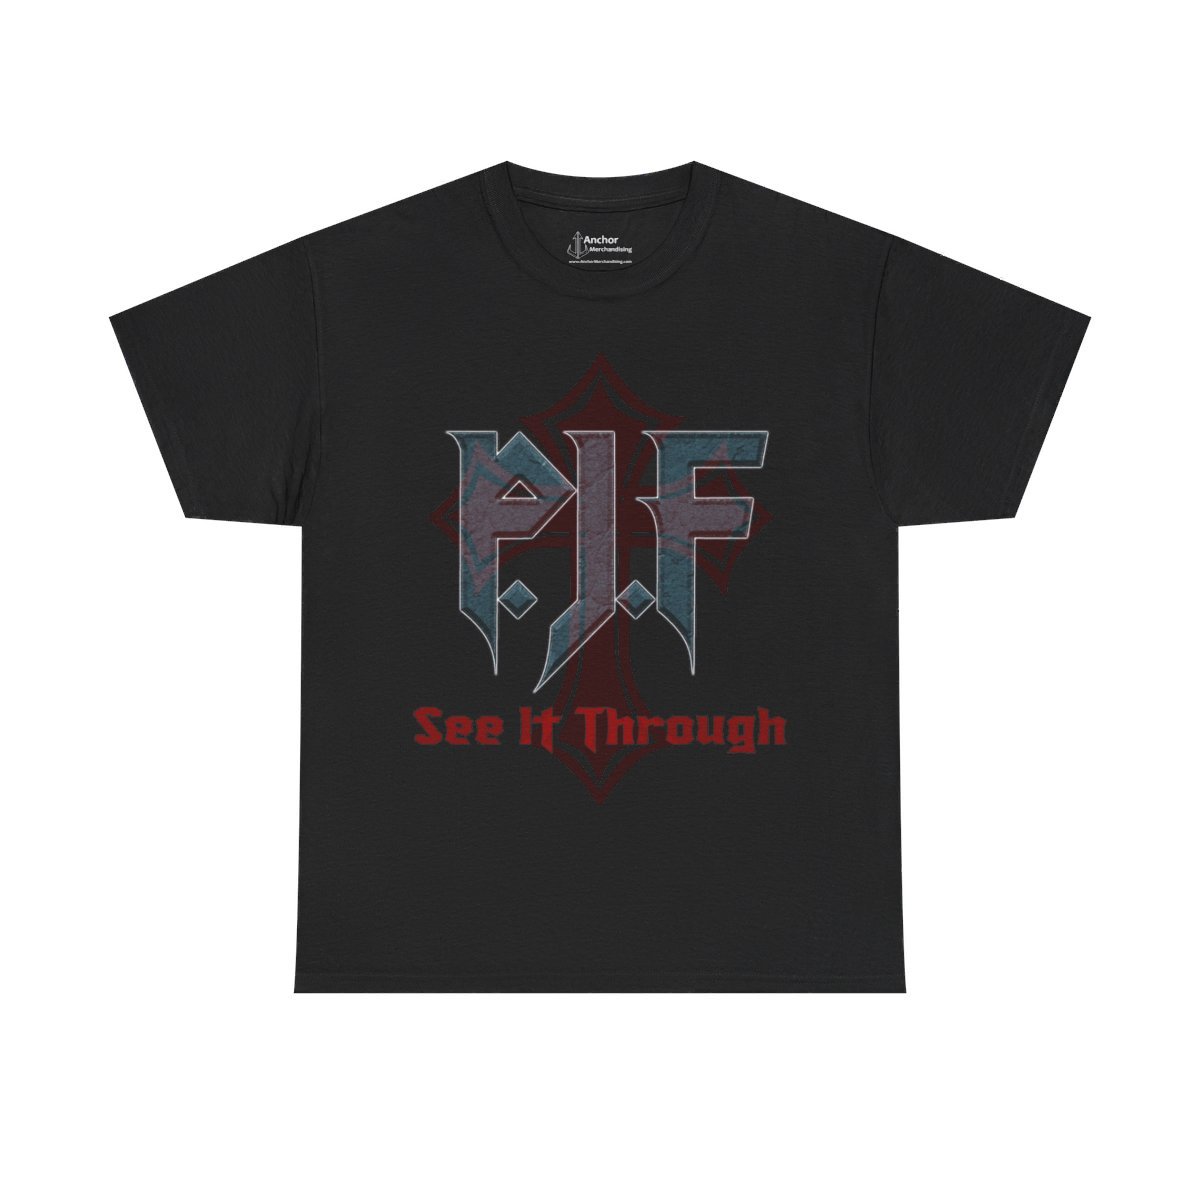 P.J.F – See It Through Short Sleeve Tshirt